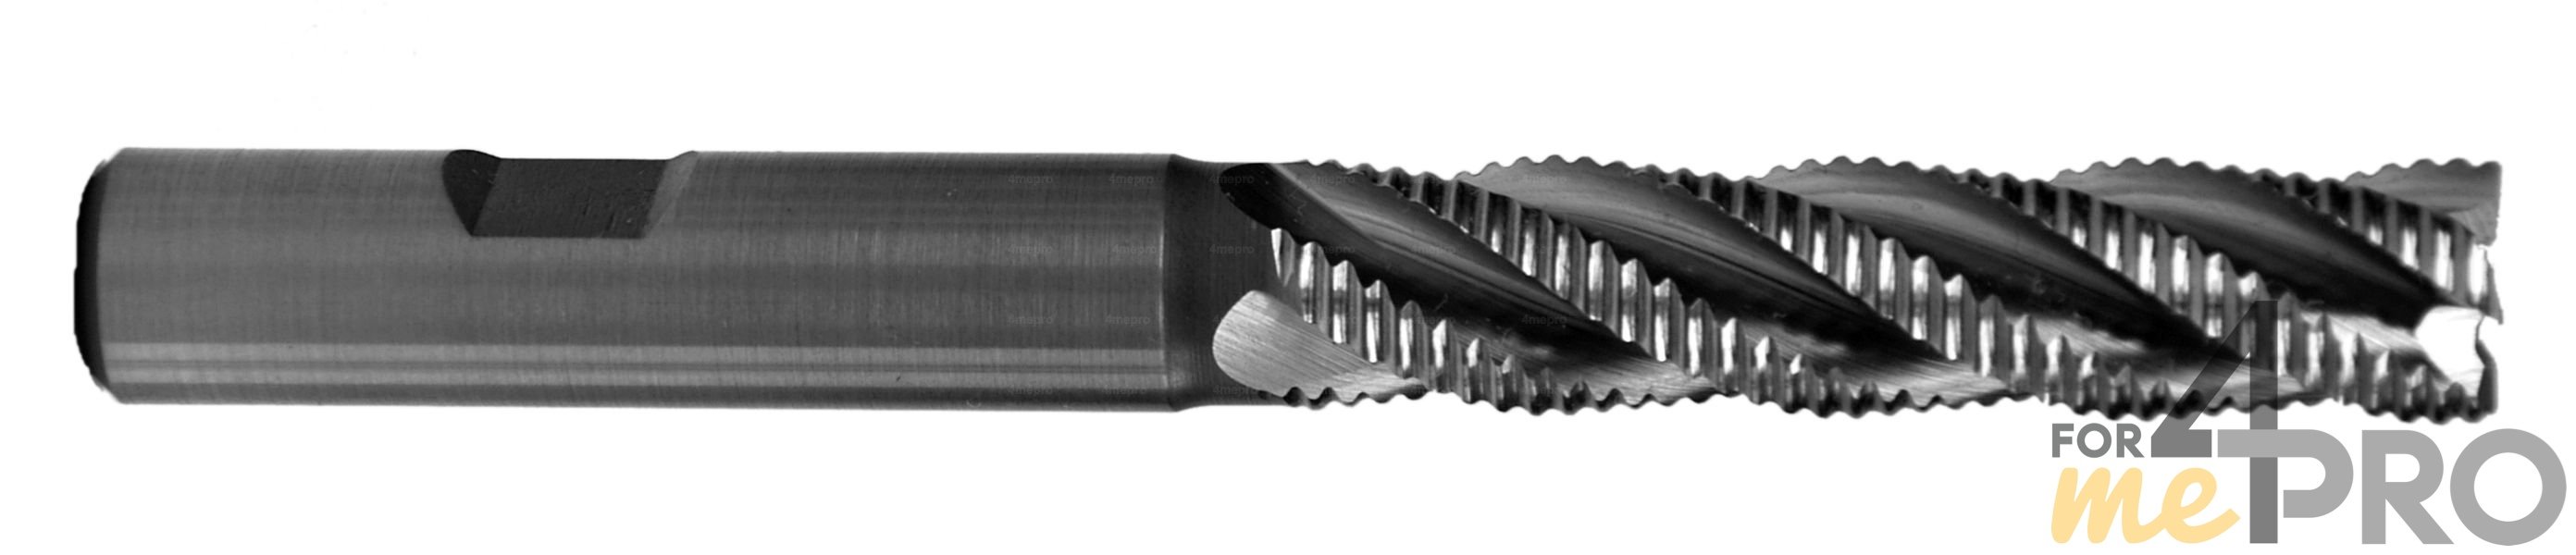 Fraise 2 tailles HSS Co8% 4-5 dents - norme DIN 844LB - série longue